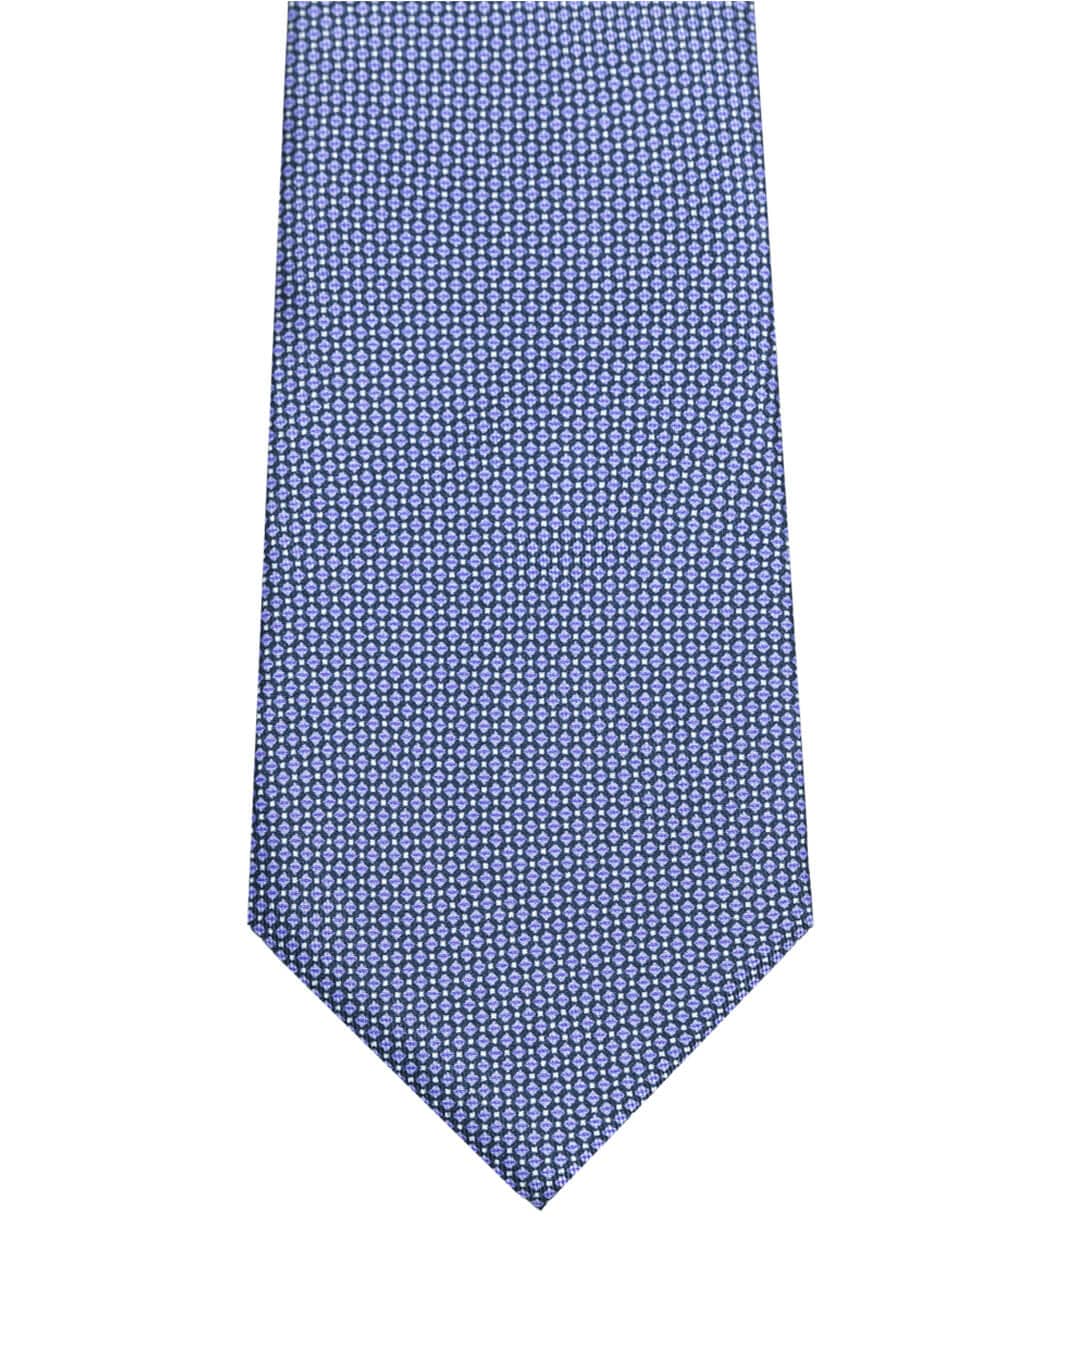 Gagliardi Ties One Size Gagliardi Purple Geometric Italian Silk Printed Tie